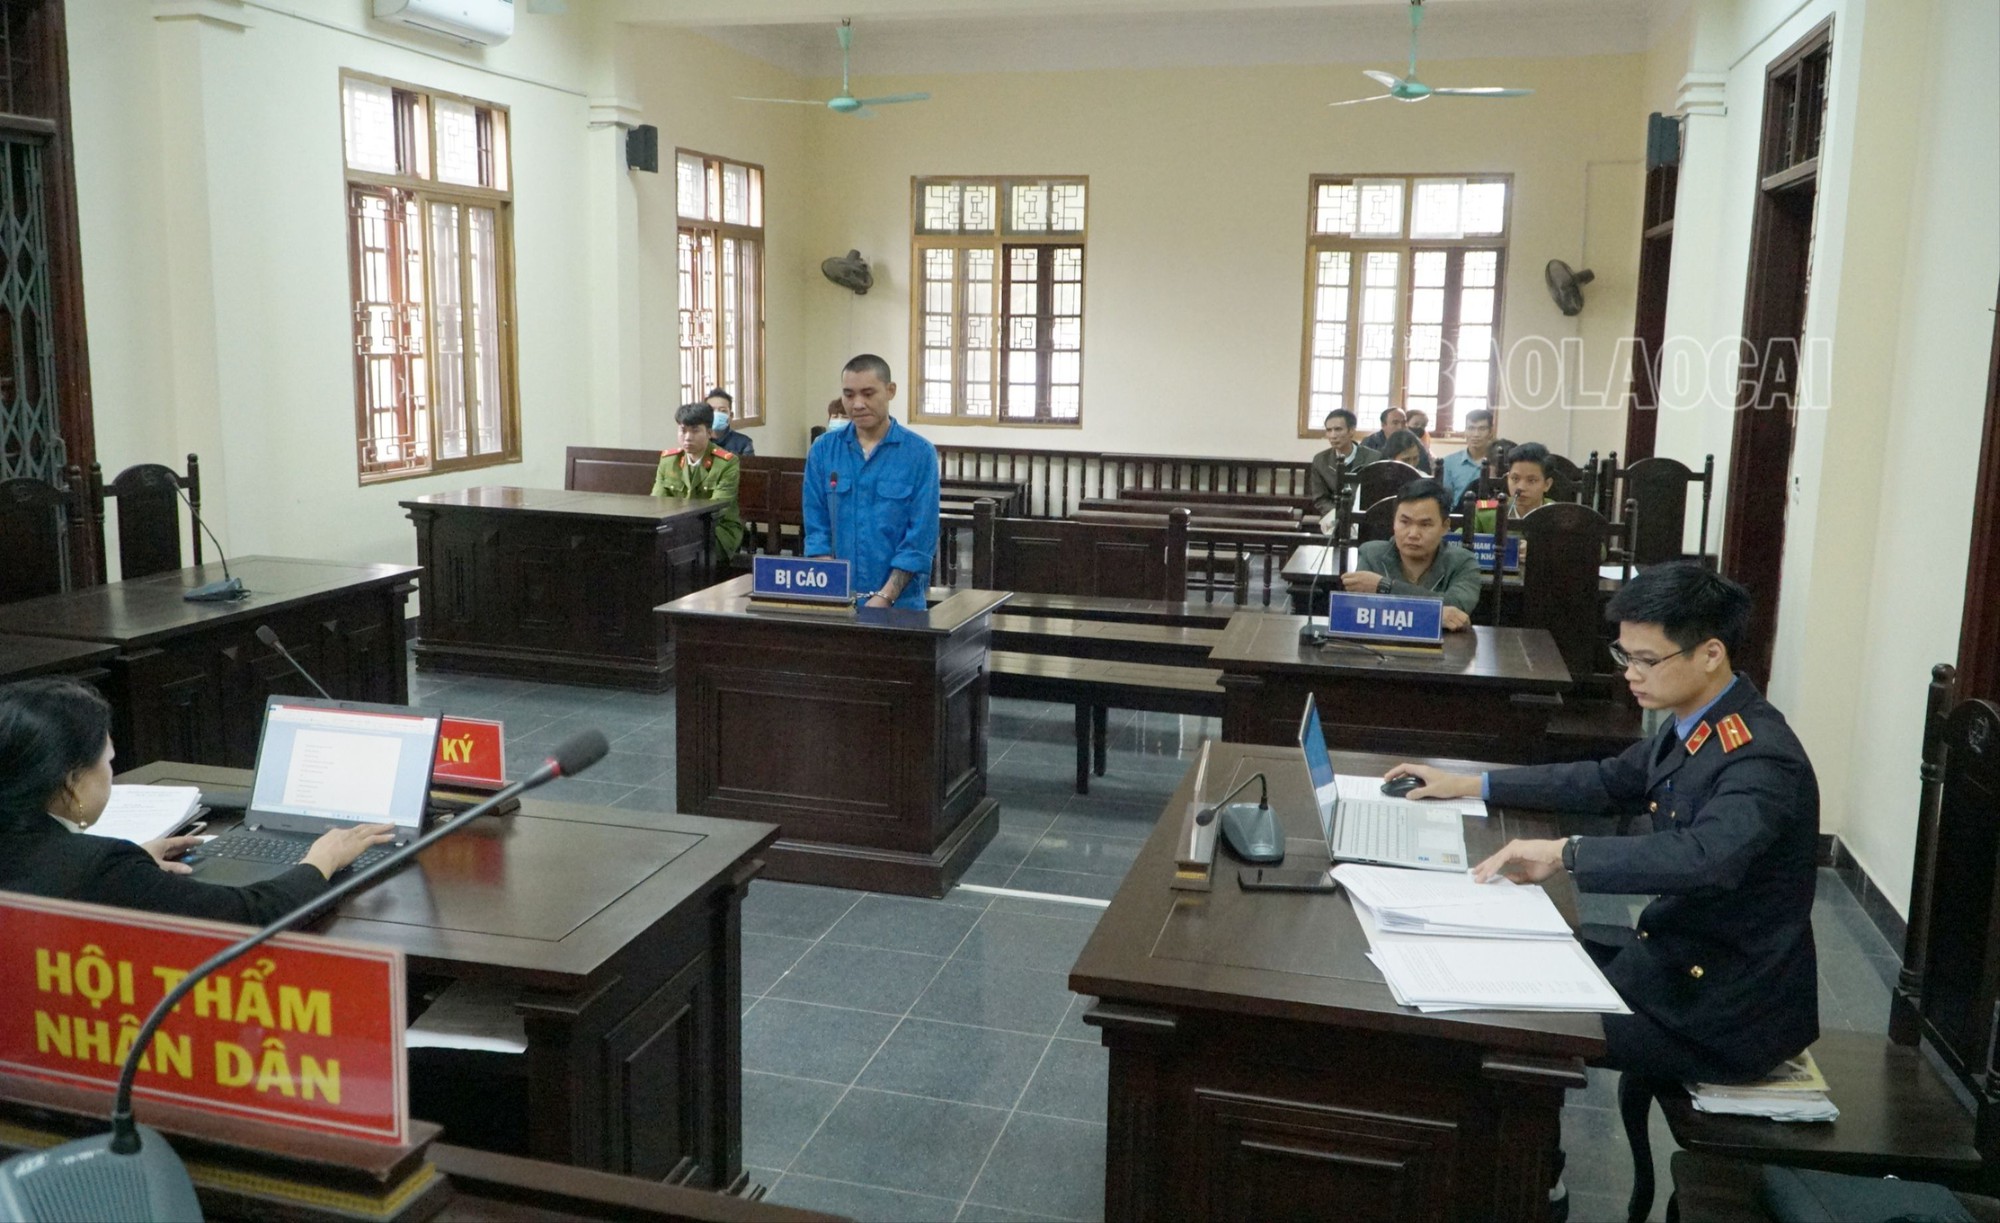 Tòa tuyên án 9 năm tù giam đối tượng cứa cổ lái xe taxi để cướp tài sản ở Lào Cai - Ảnh 1.